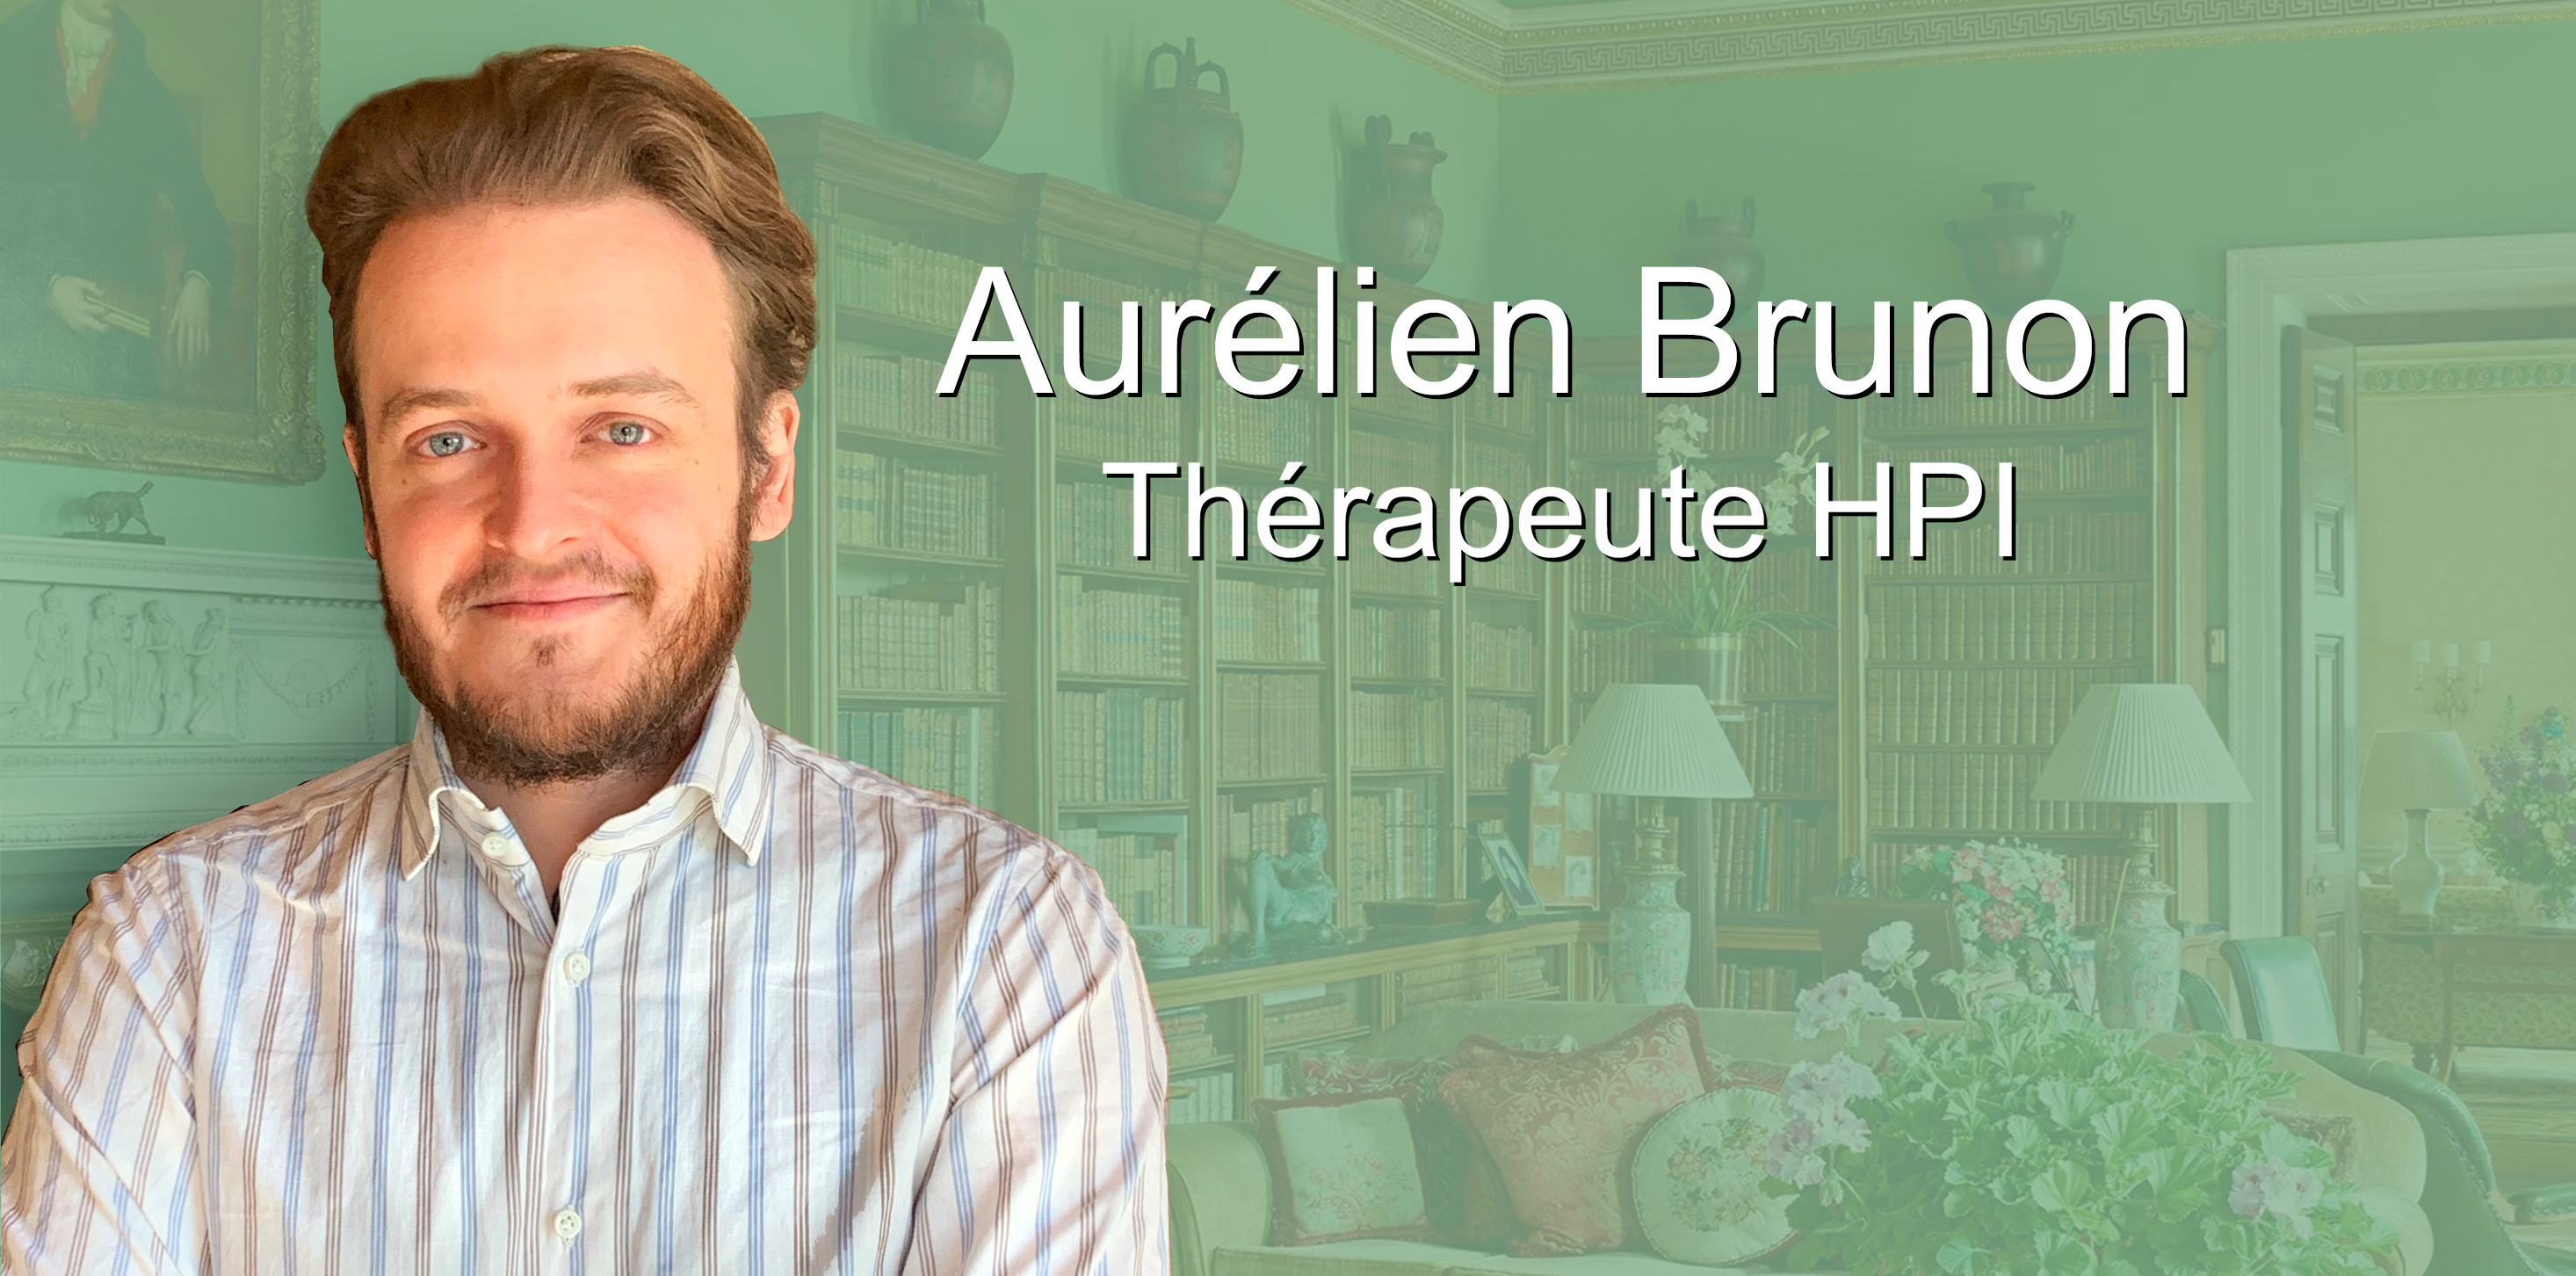 Aurélien Brunon thérapeute et psy HPI vous reçois au sein de son cabinet